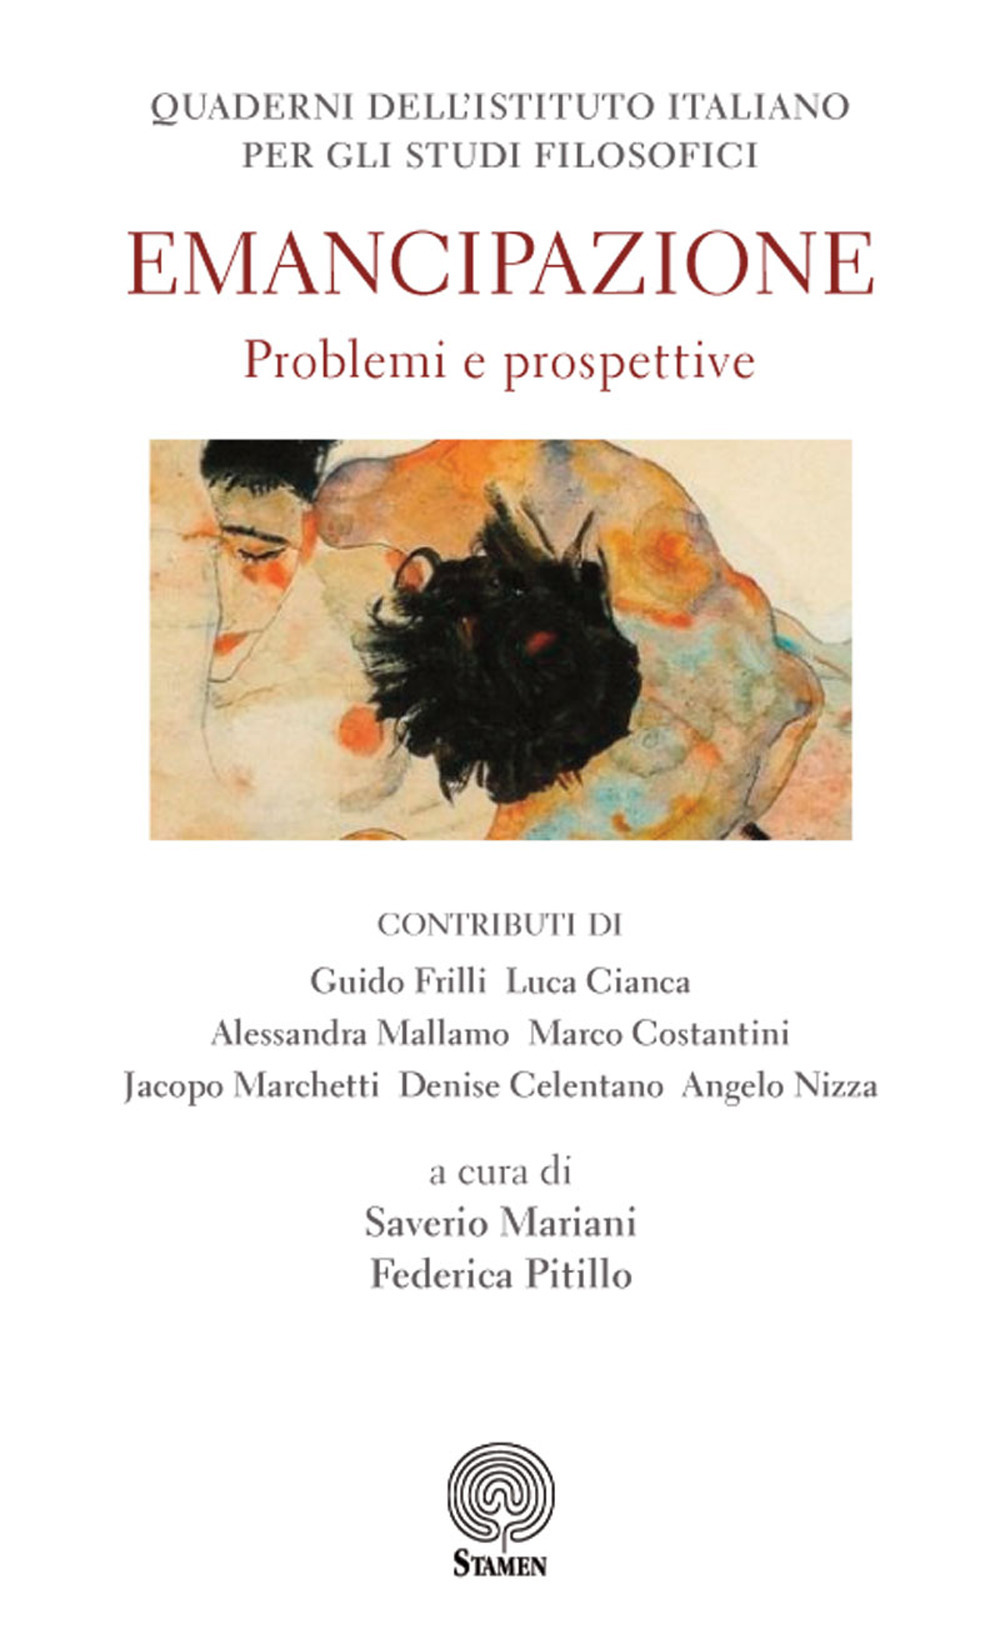 Quaderni dell'Istituto italiano per gli studi filosofici (2017). Vol. 1: Emancipazione. Problemi e prospettive